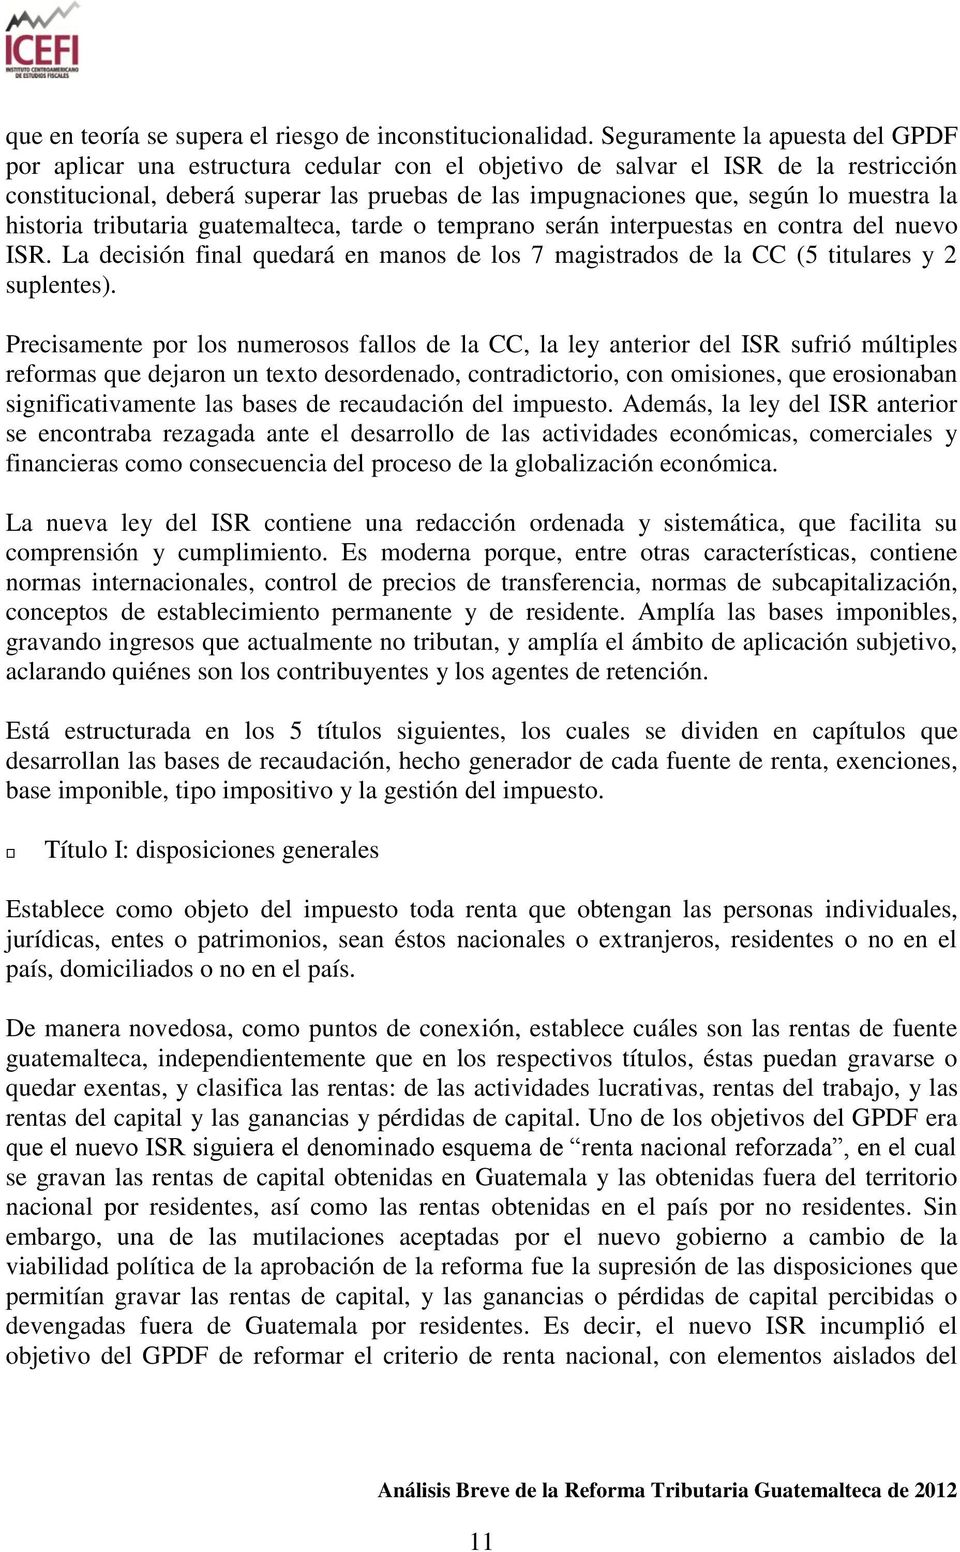 muestra la historia tributaria guatemalteca, tarde o temprano serán interpuestas en contra del nuevo ISR. La decisión final quedará en manos de los 7 magistrados de la CC (5 titulares y 2 suplentes).